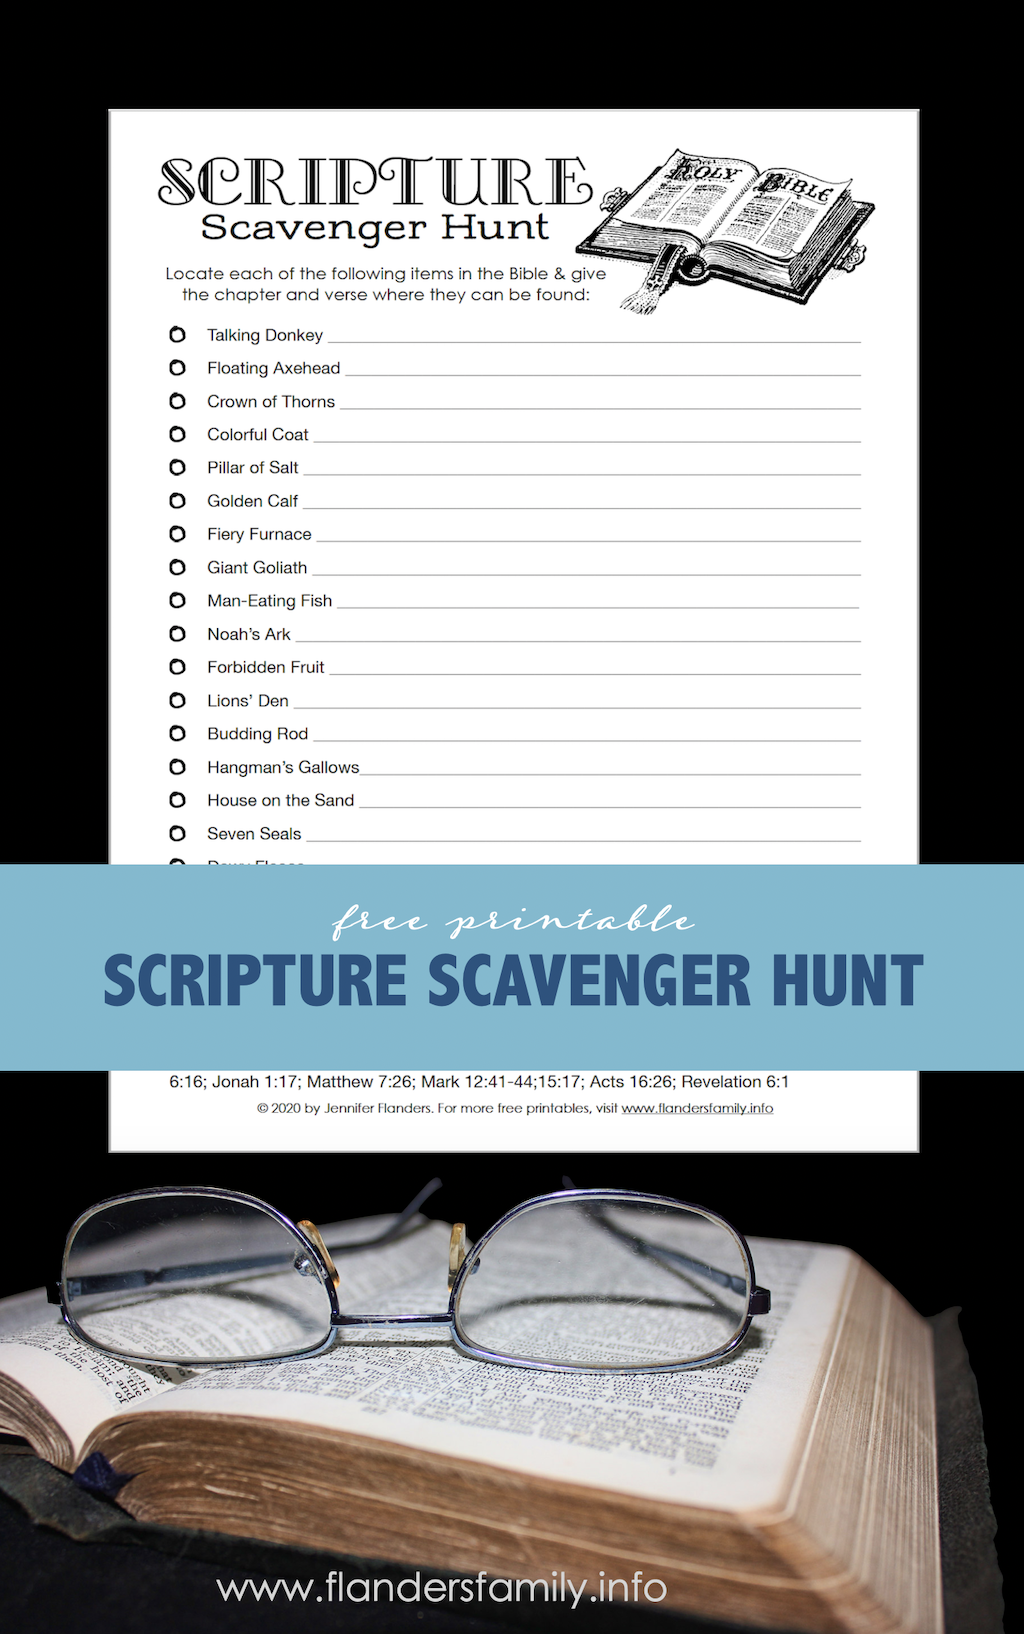 Scripture Scavenger Hunt